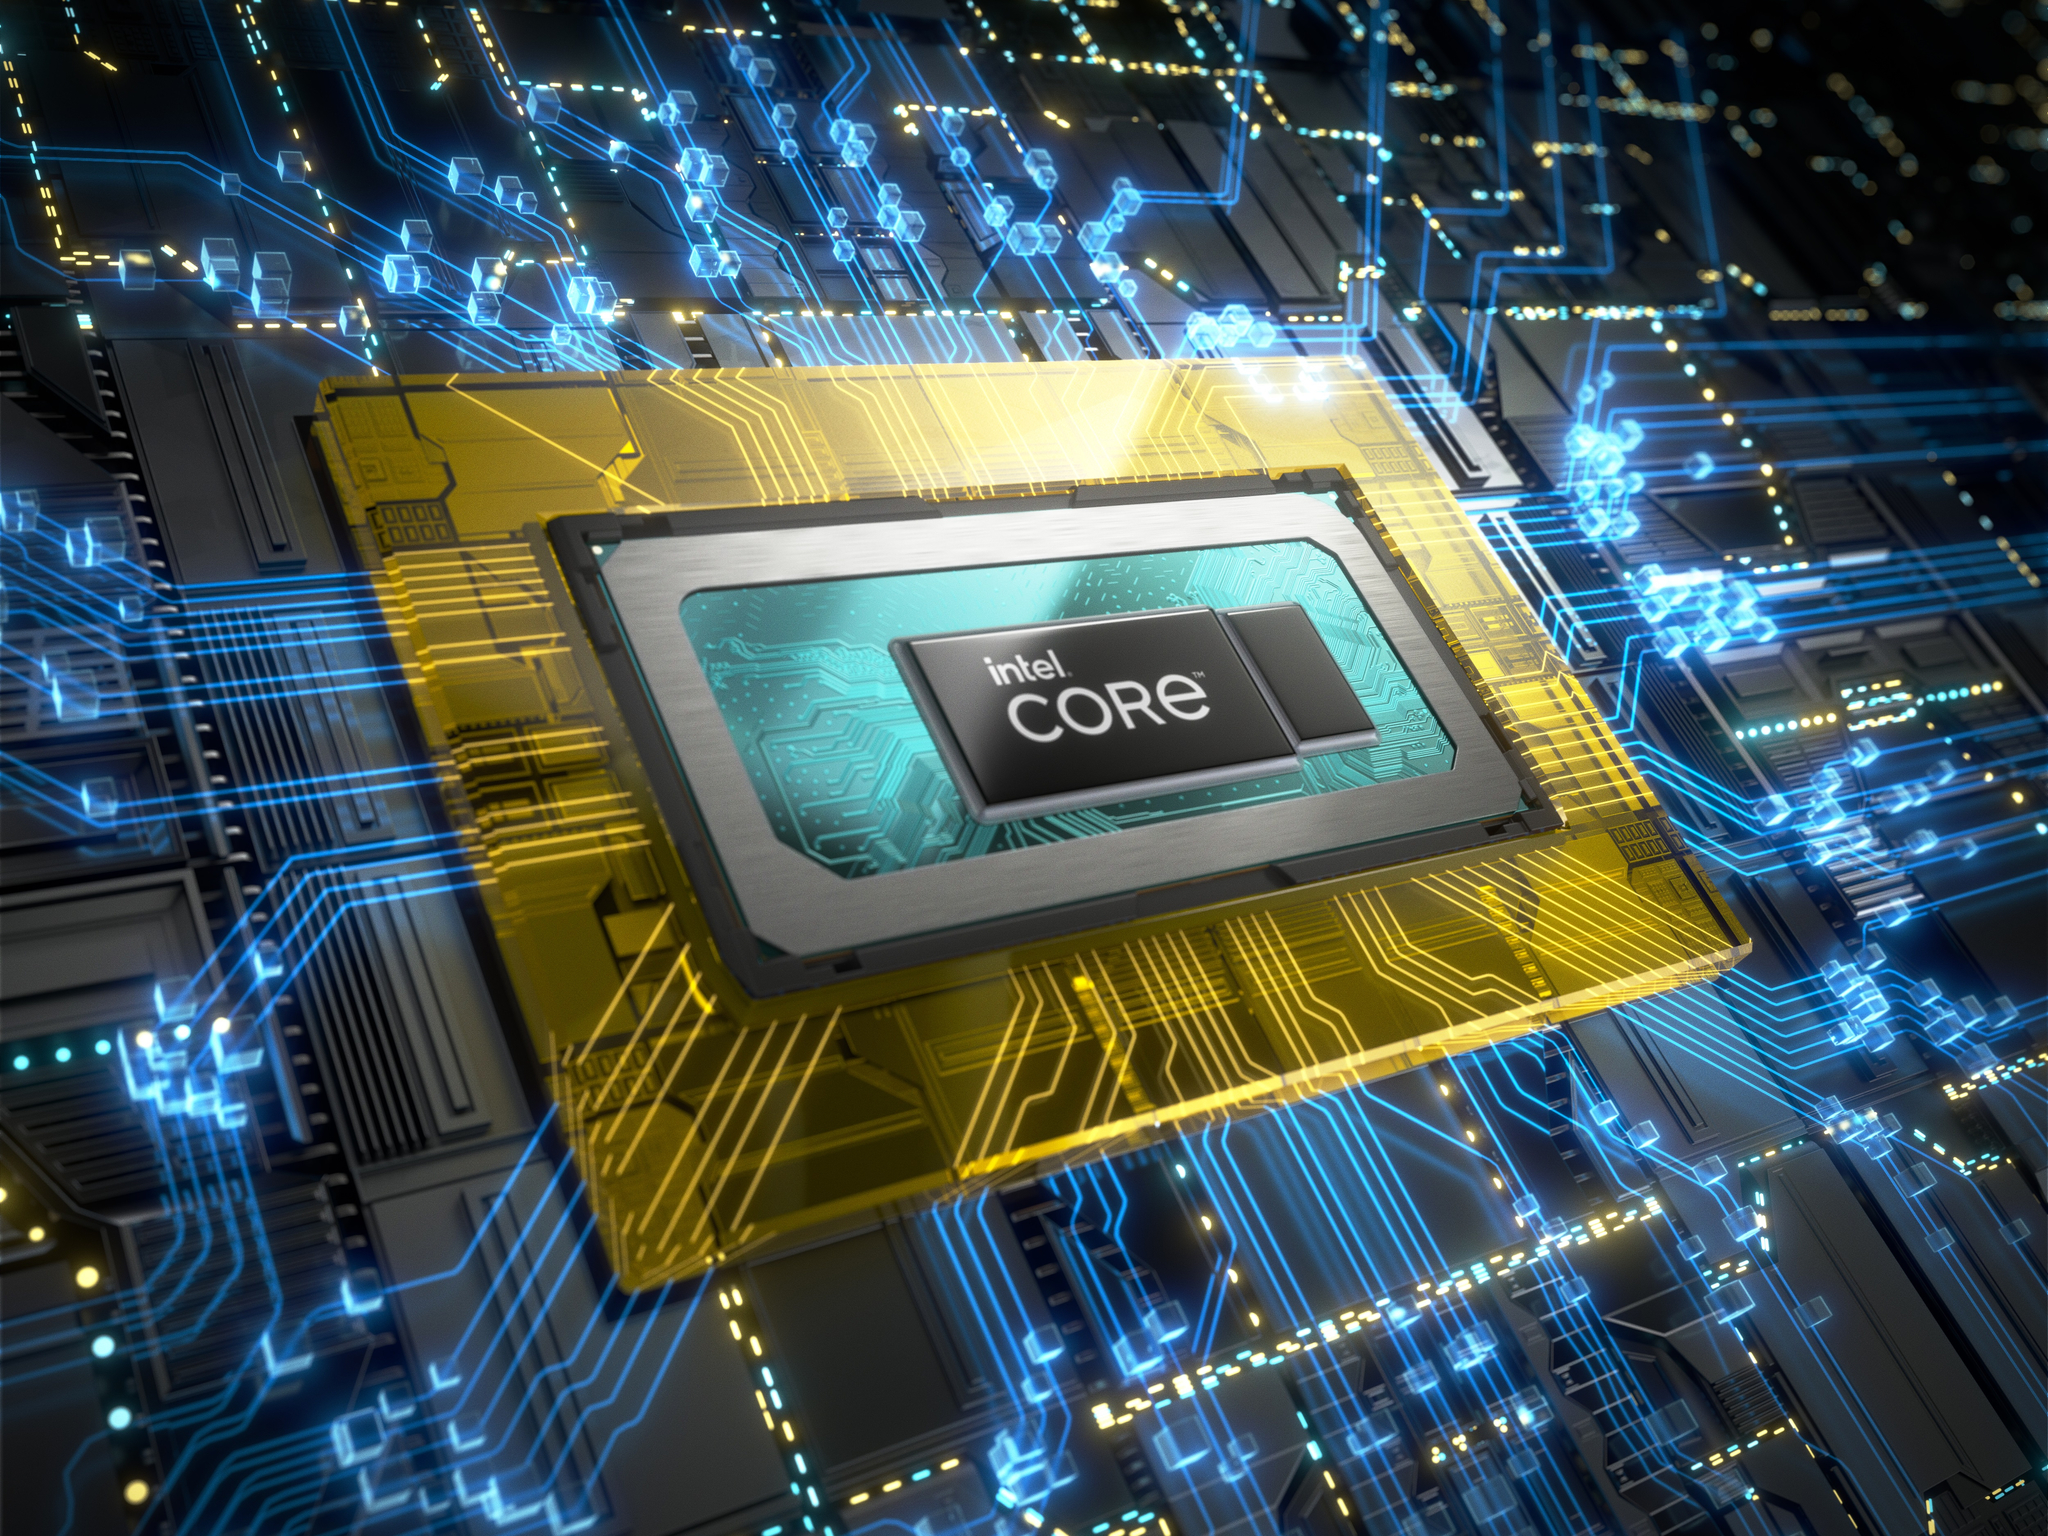 Intel dévoile la famille de processeurs mobiles Intel Core de 12e génération avec le lancement de huit nouveaux processeurs mobiles de la série H, basés sur l'architecture hybride de performance d'Intel.  Les huit nouveaux processeurs mobiles